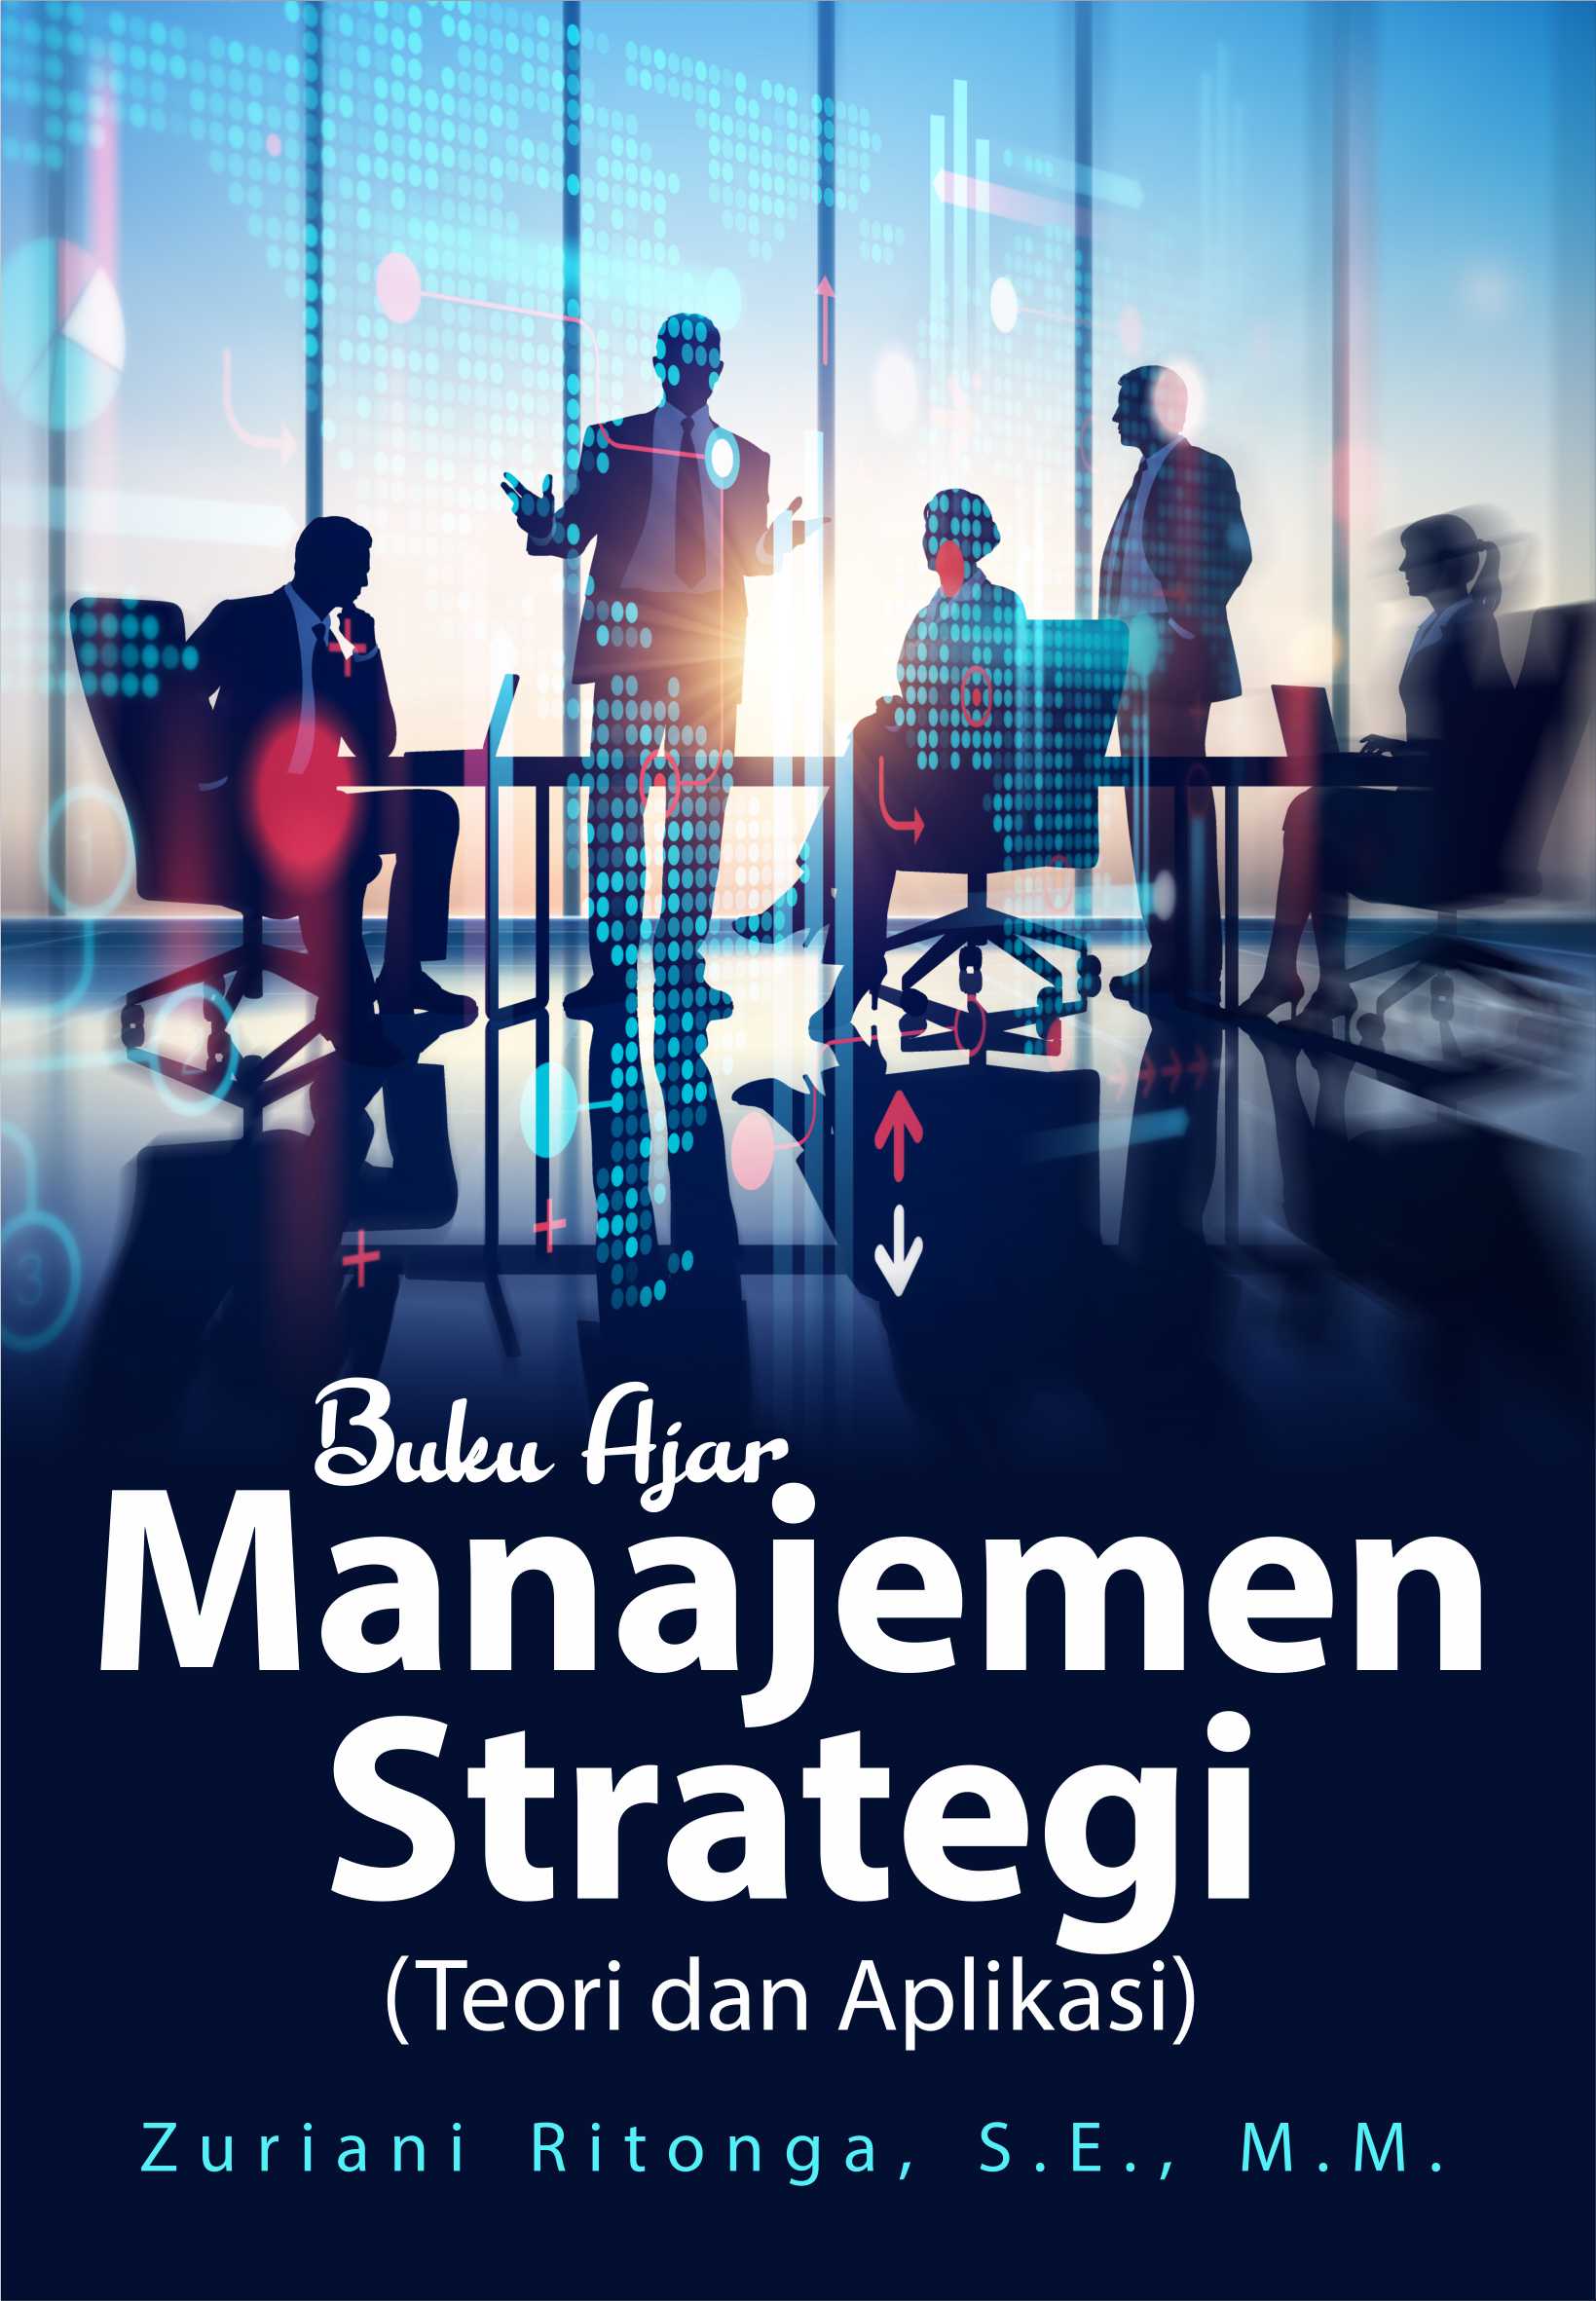 Buku ajar manajemen strategi : teori dan aplikasi